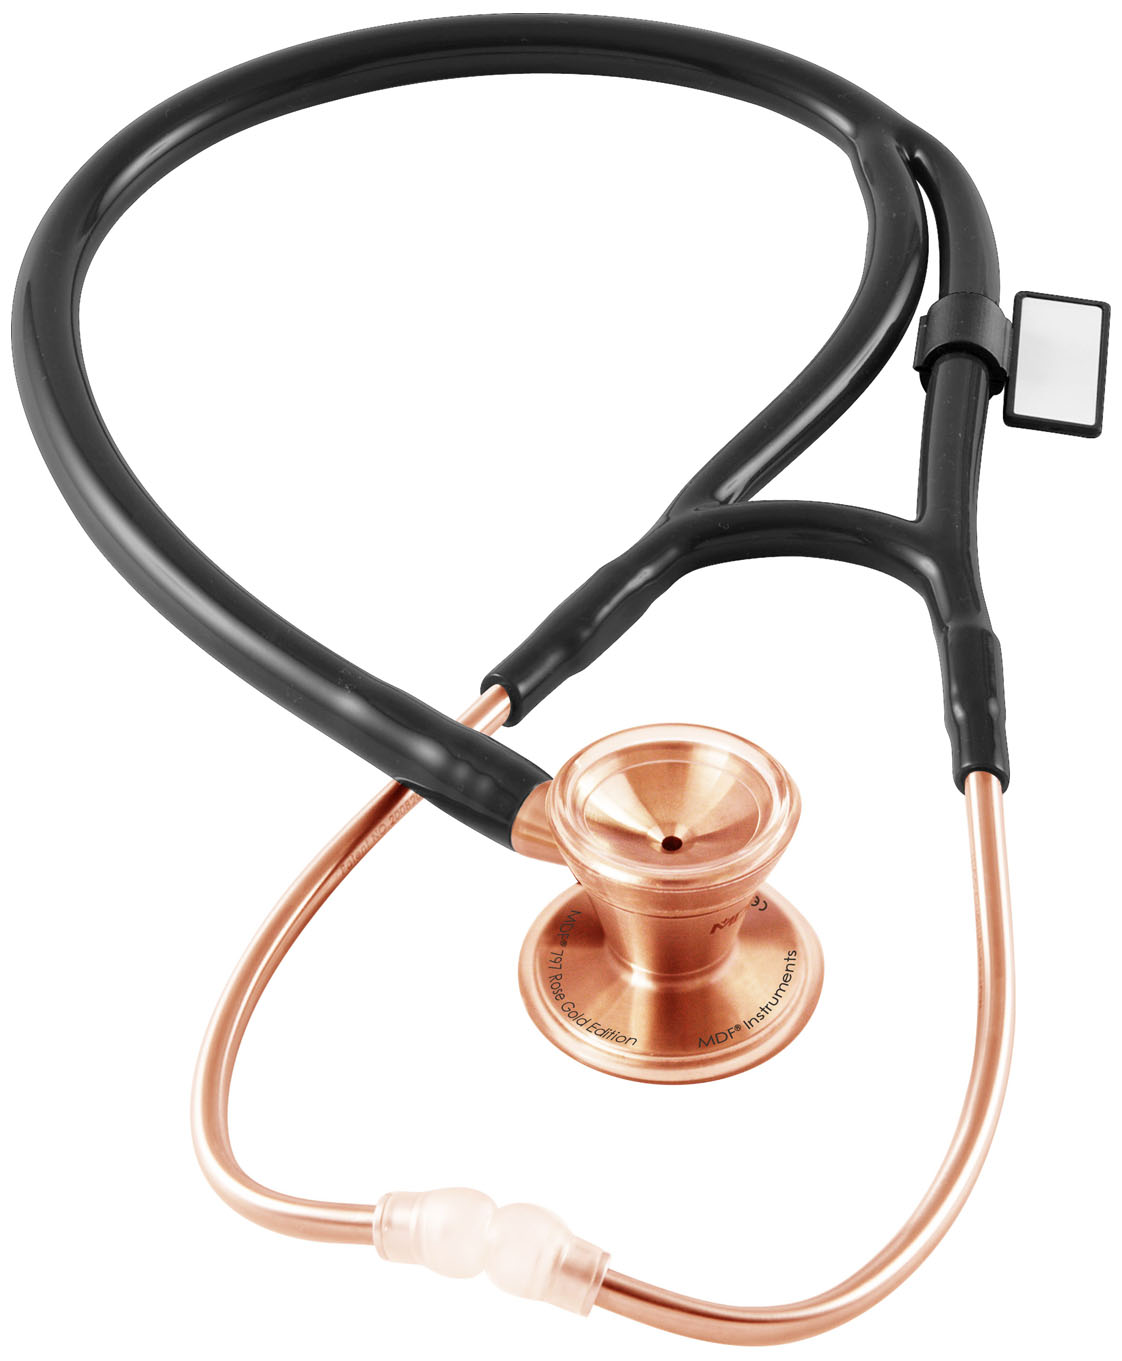 stethoscope price online